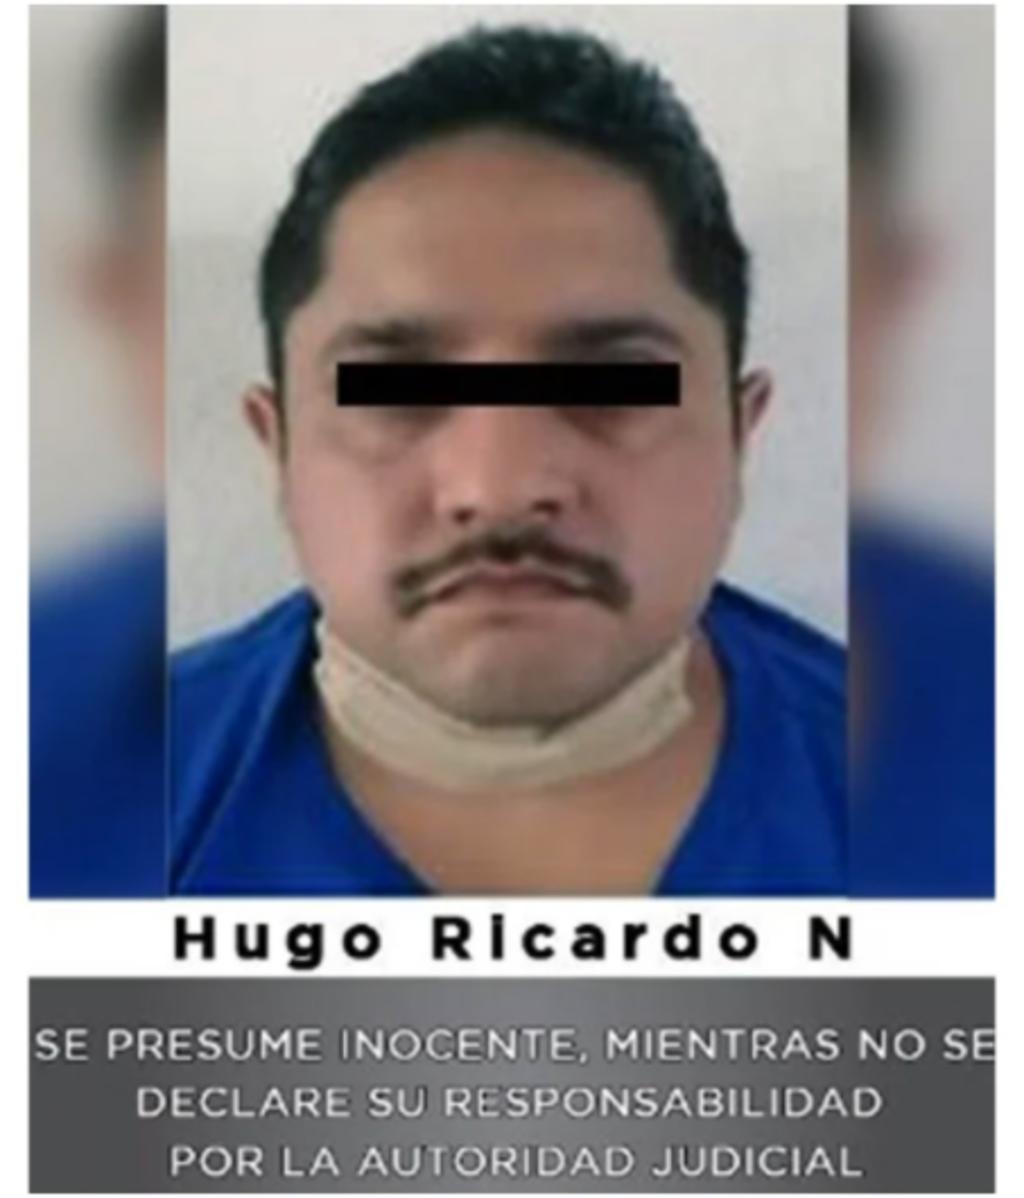 Hugo Ricardo, alias 'El Gordo' fue vinculado a proceso por un juez por el homicidio del alcalde de Valle de Chalco, Francisco Tenorio Contreras, quien fue baleado el 29 de octubre del año pasado.
(ESPECIAL)